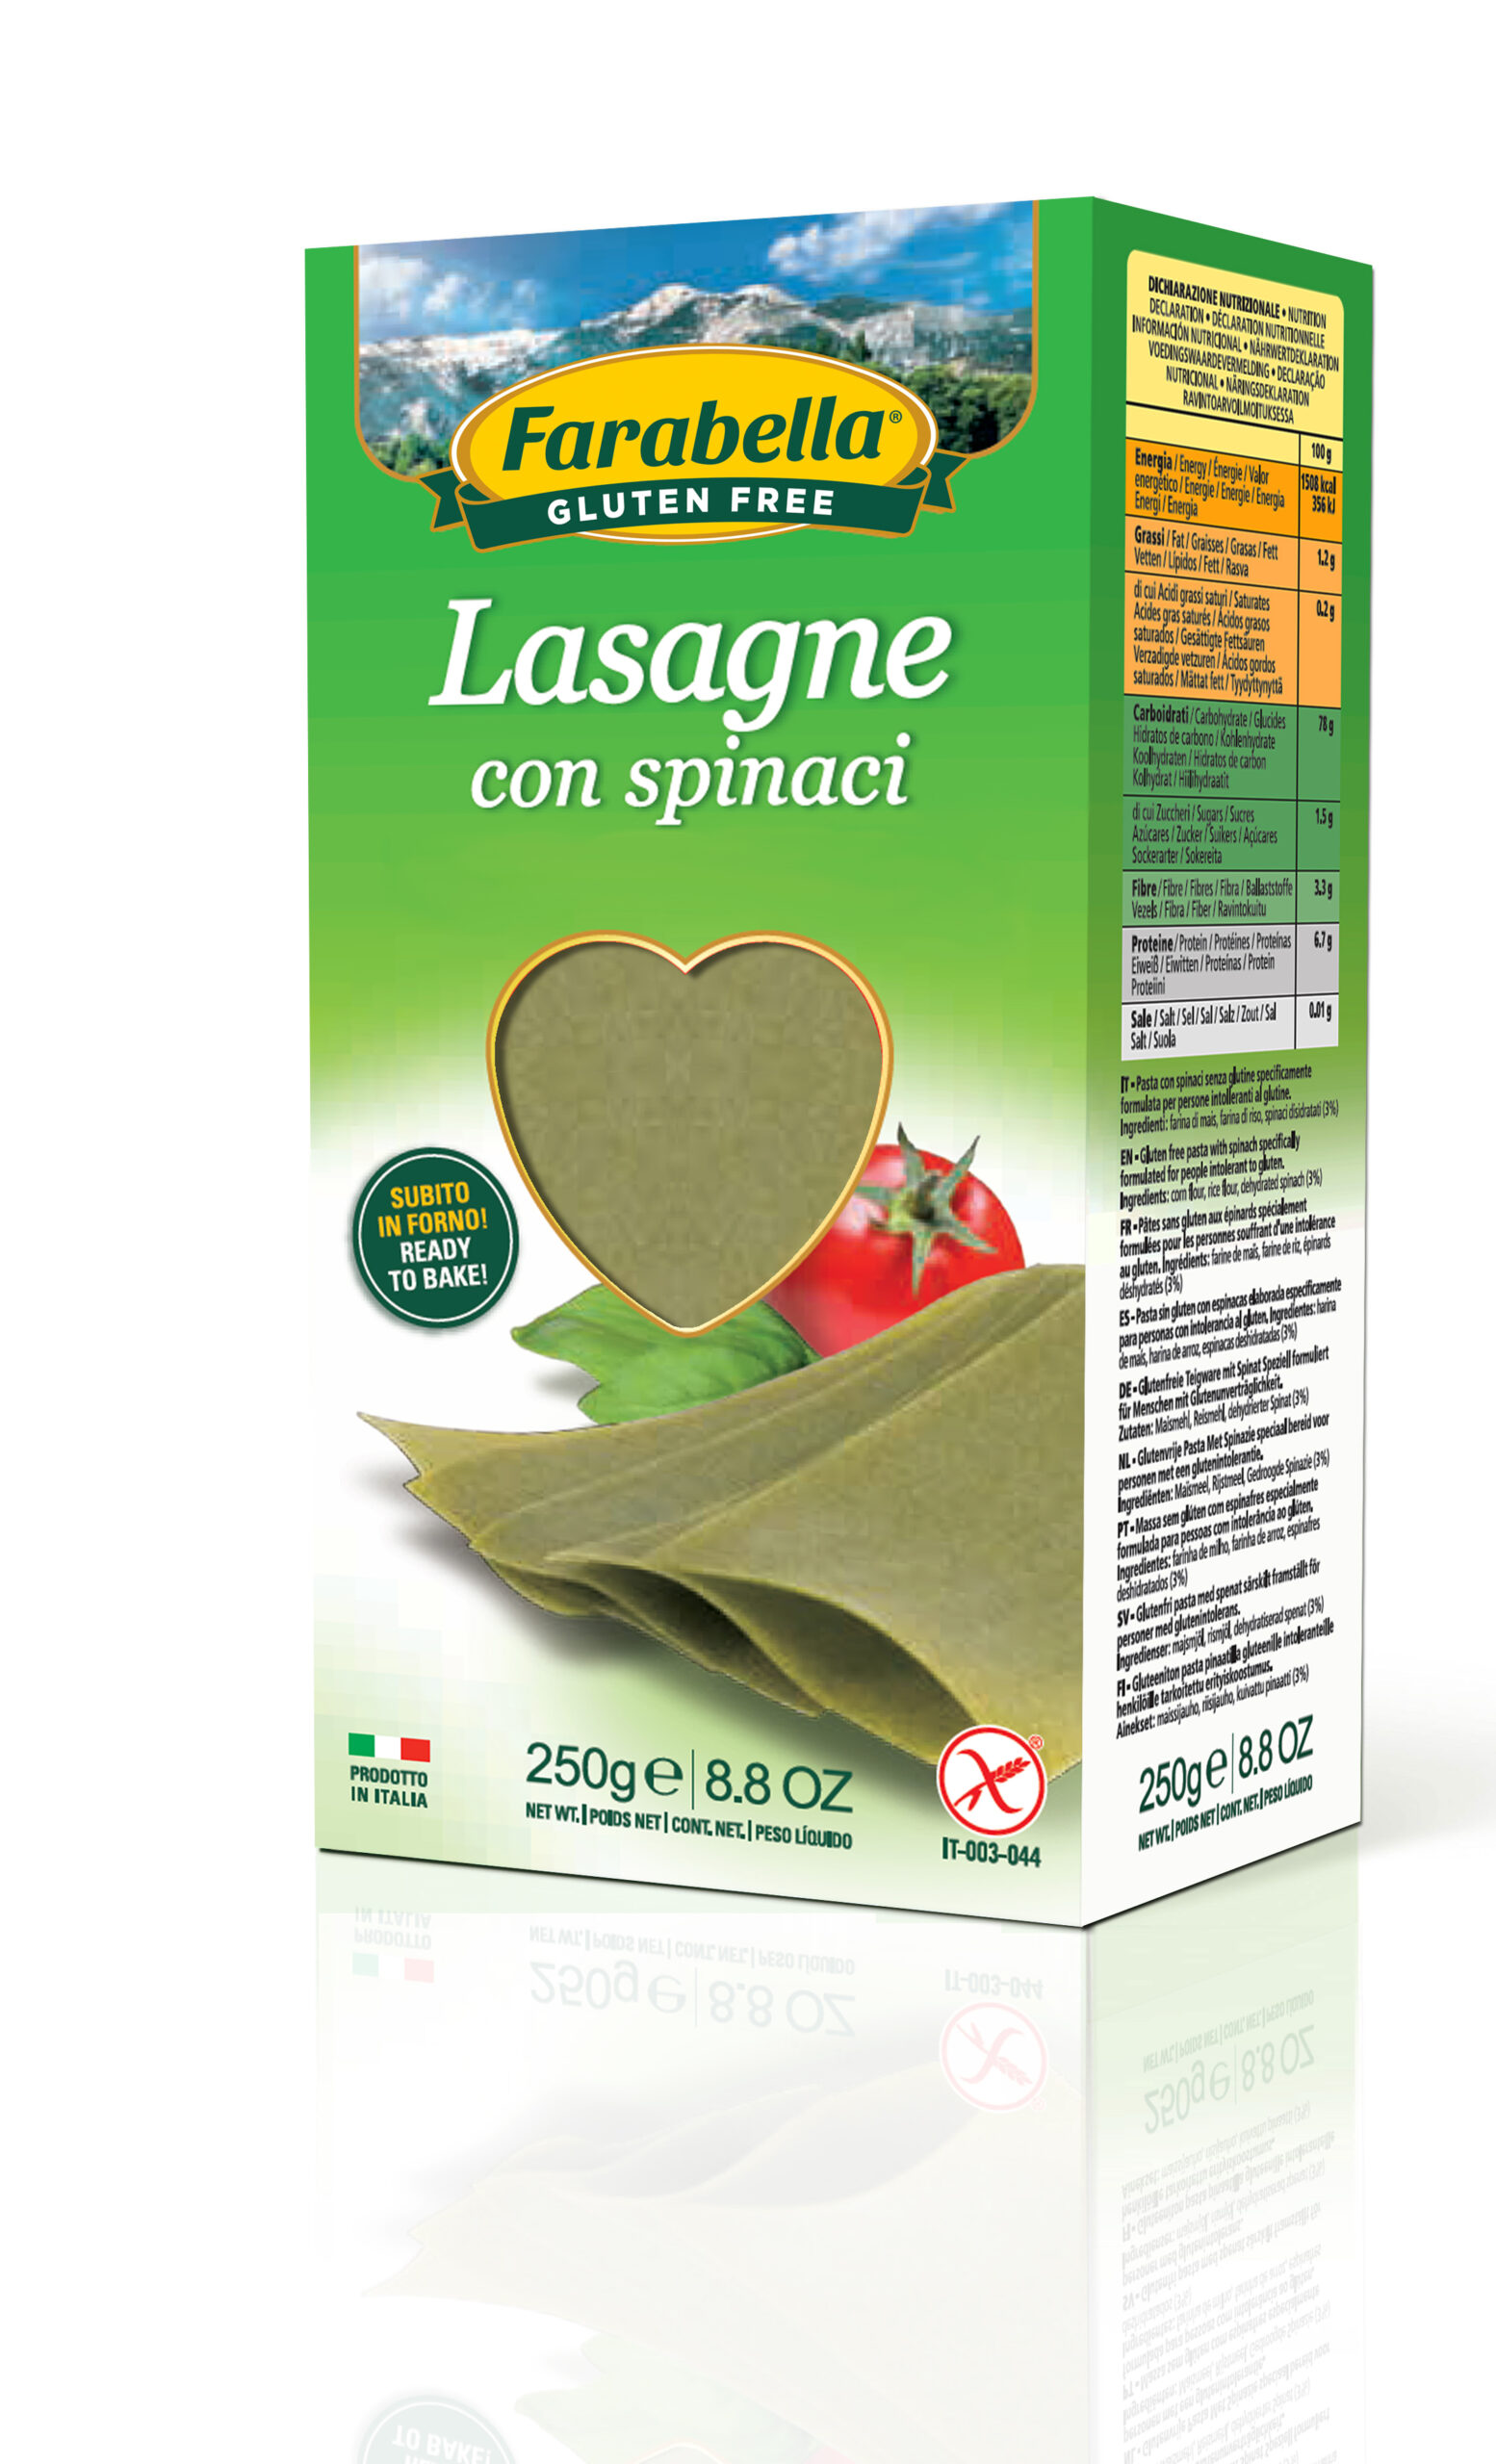 Farabella Lasagne agli Spinaci